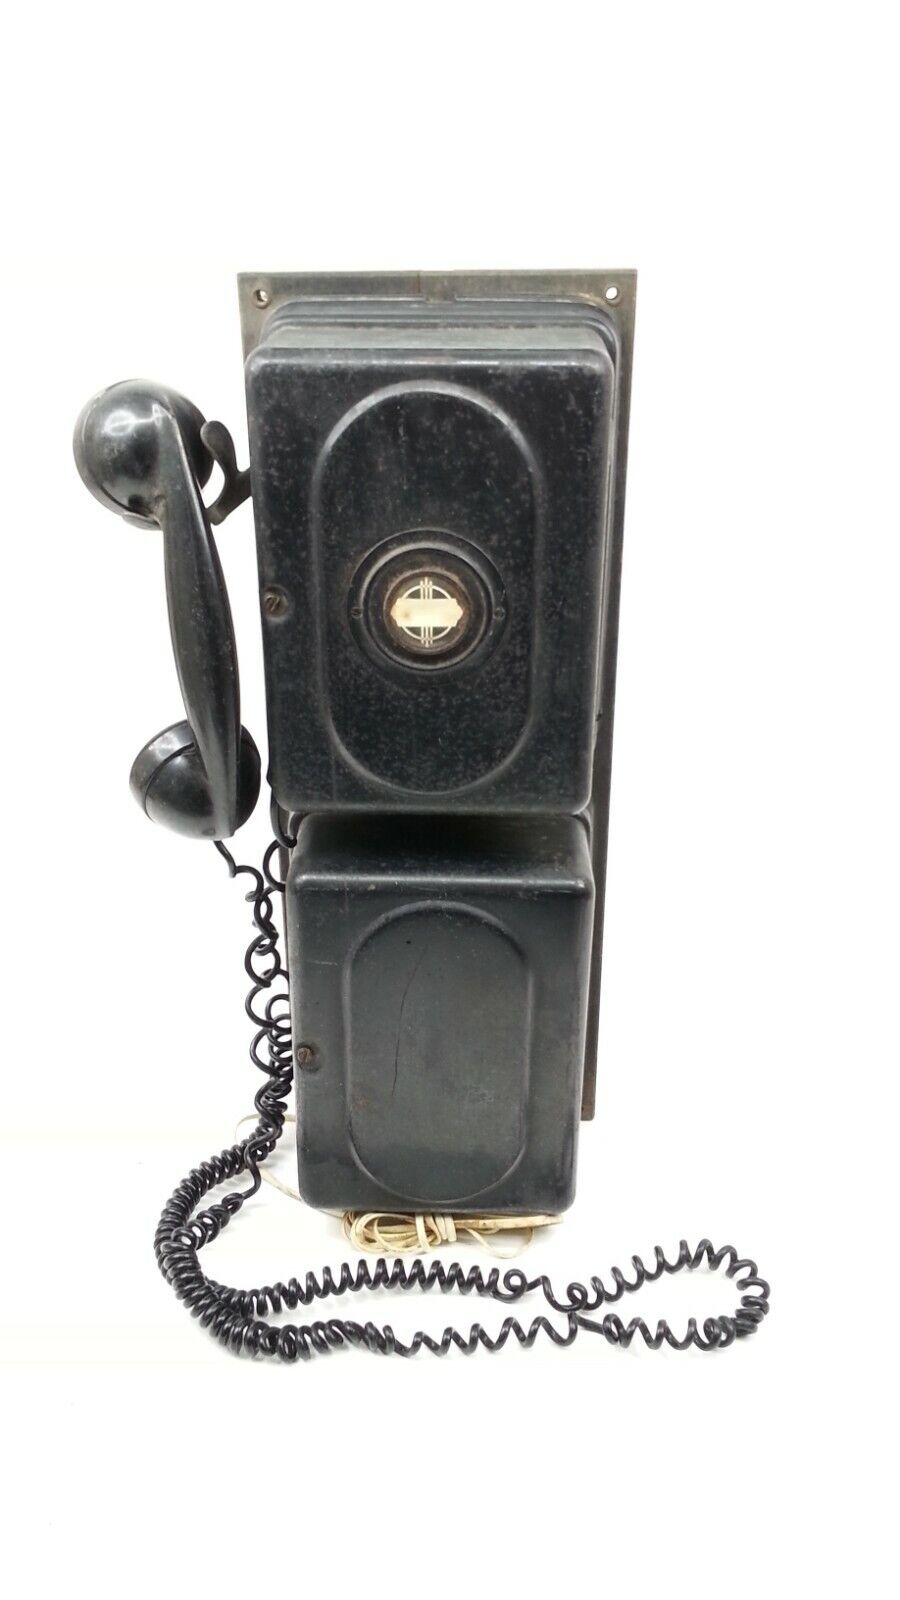 Antique 1930s Automatic Electric Co Railroad Phone Art Deco Steam Punk Monophone